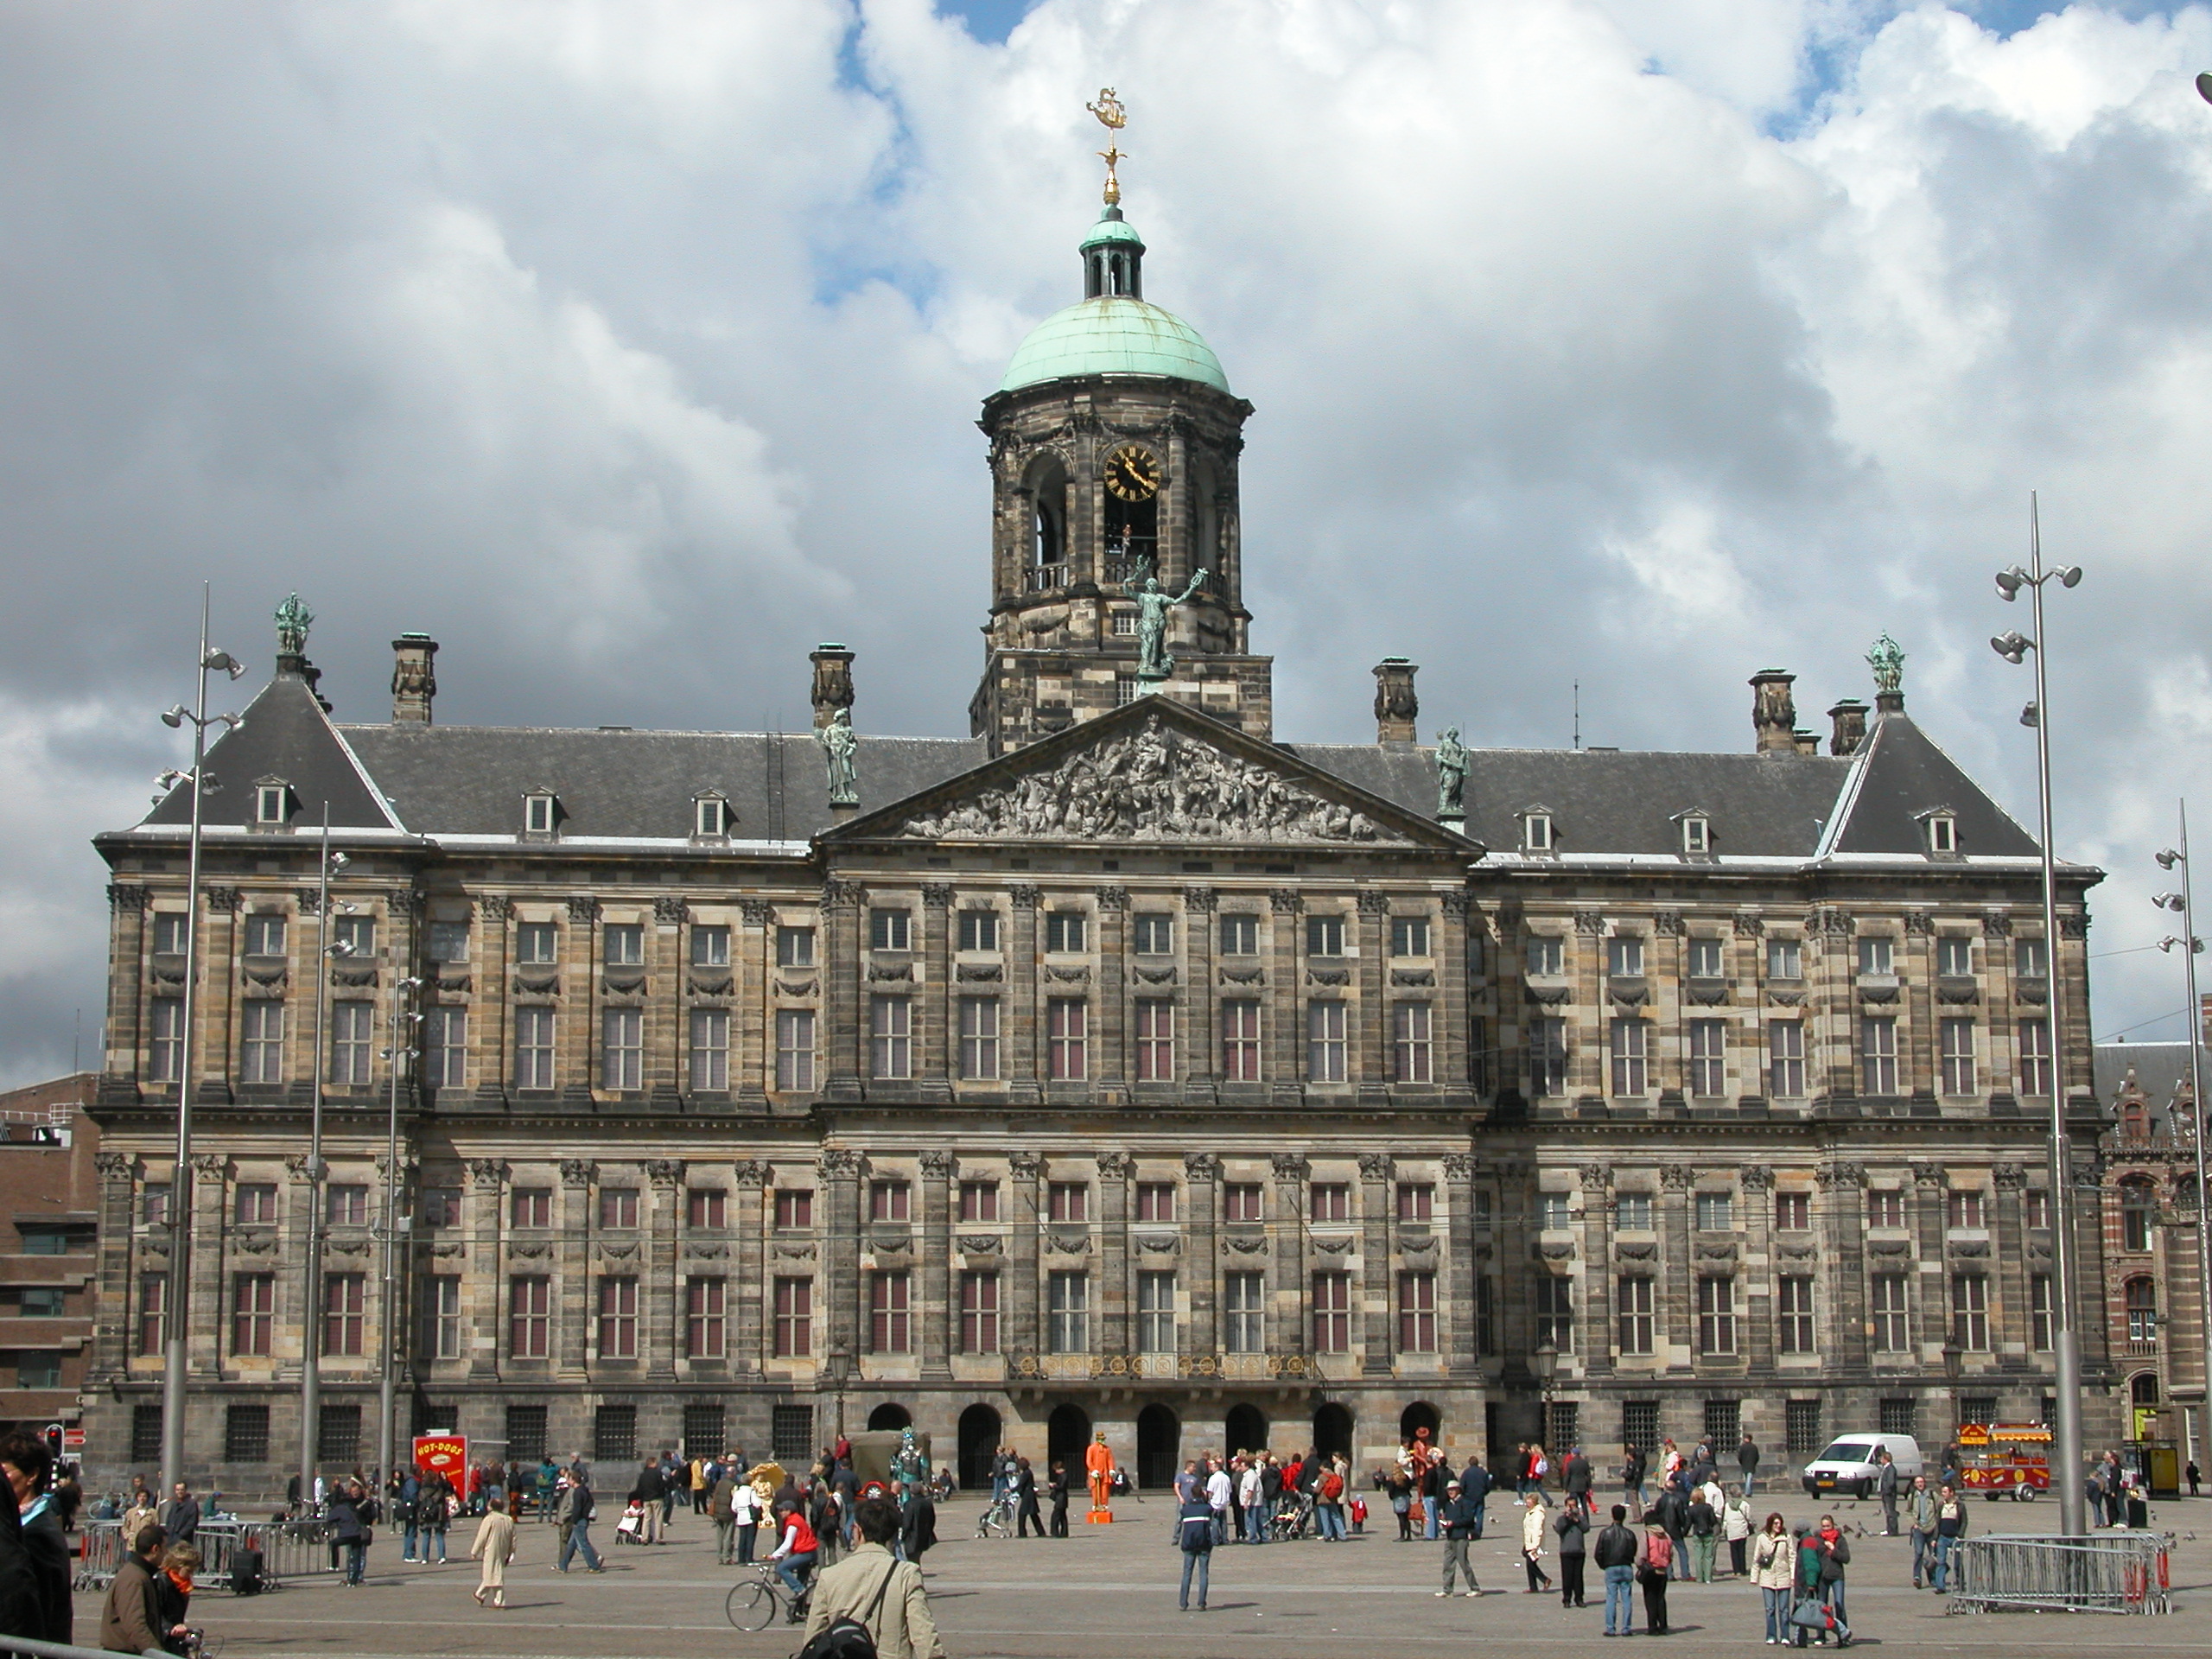 Prefeitura de Amsterdã, construída em 1665  